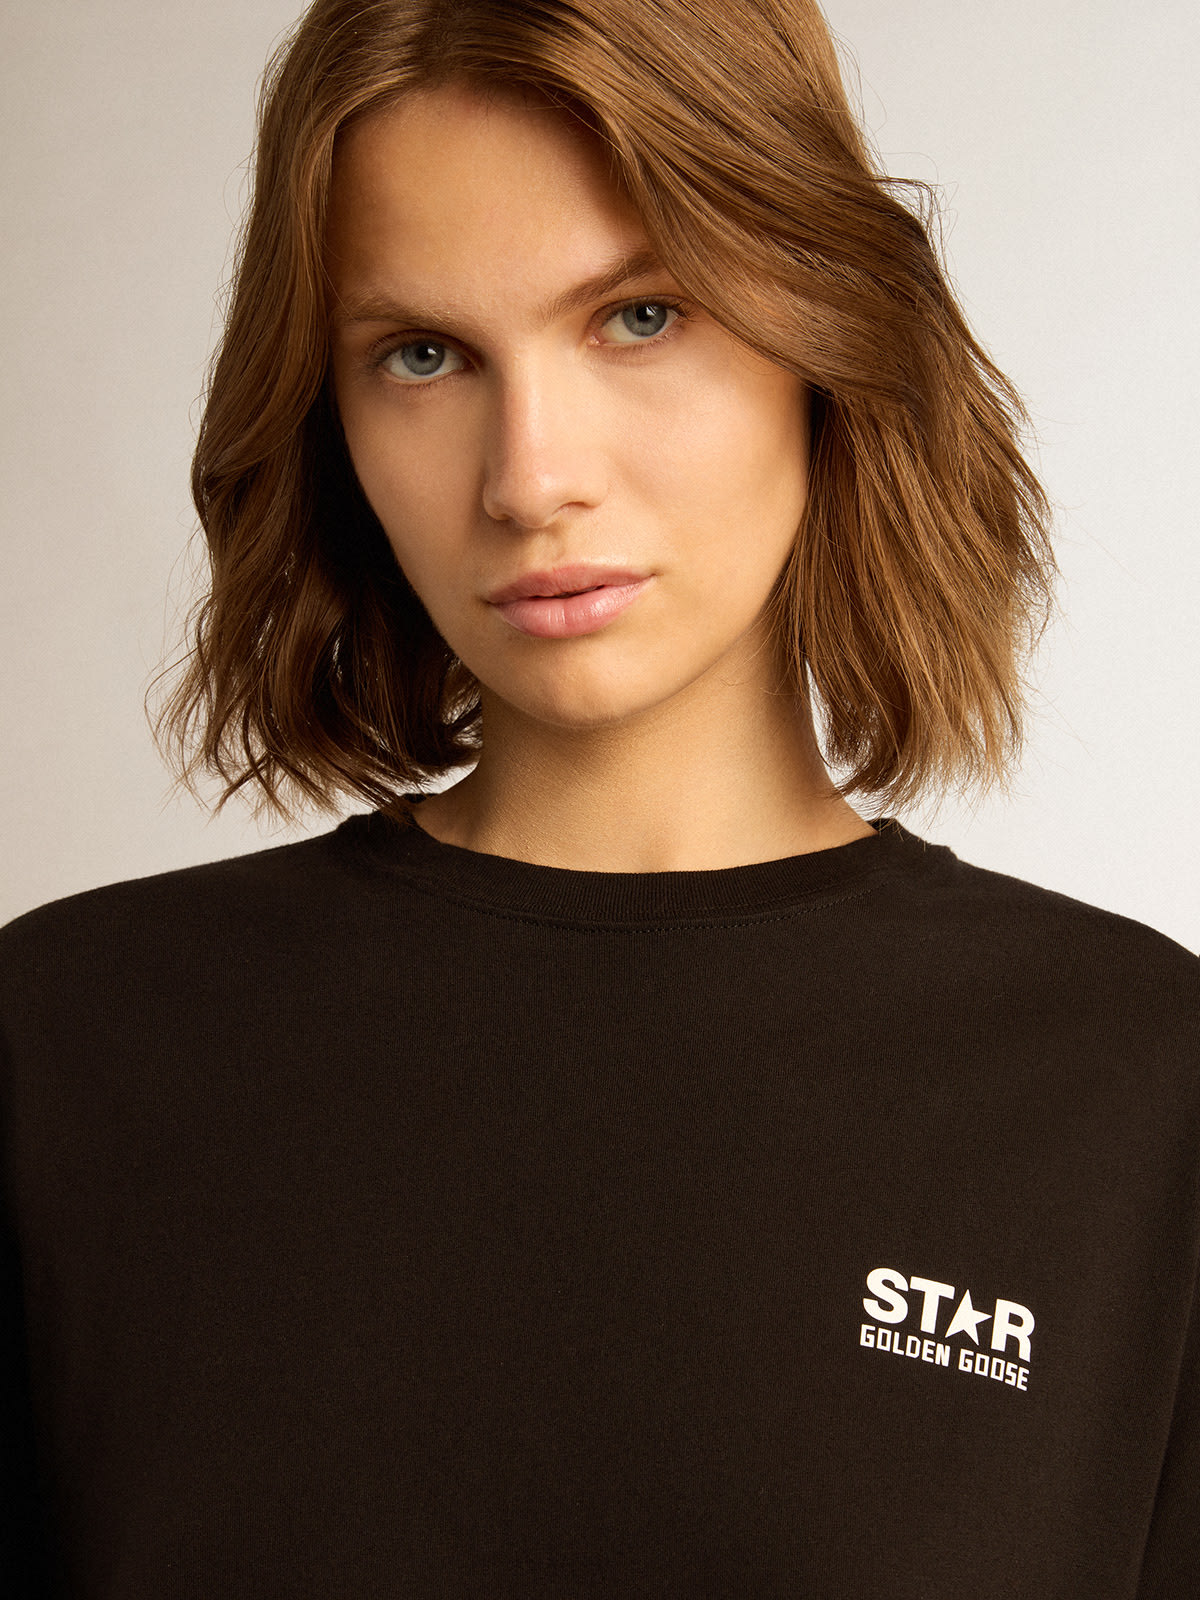 Golden Goose - Schwarzes T-Shirt aus der Star Collection mit Logo und Stern in kontrastierendem Weiß in 